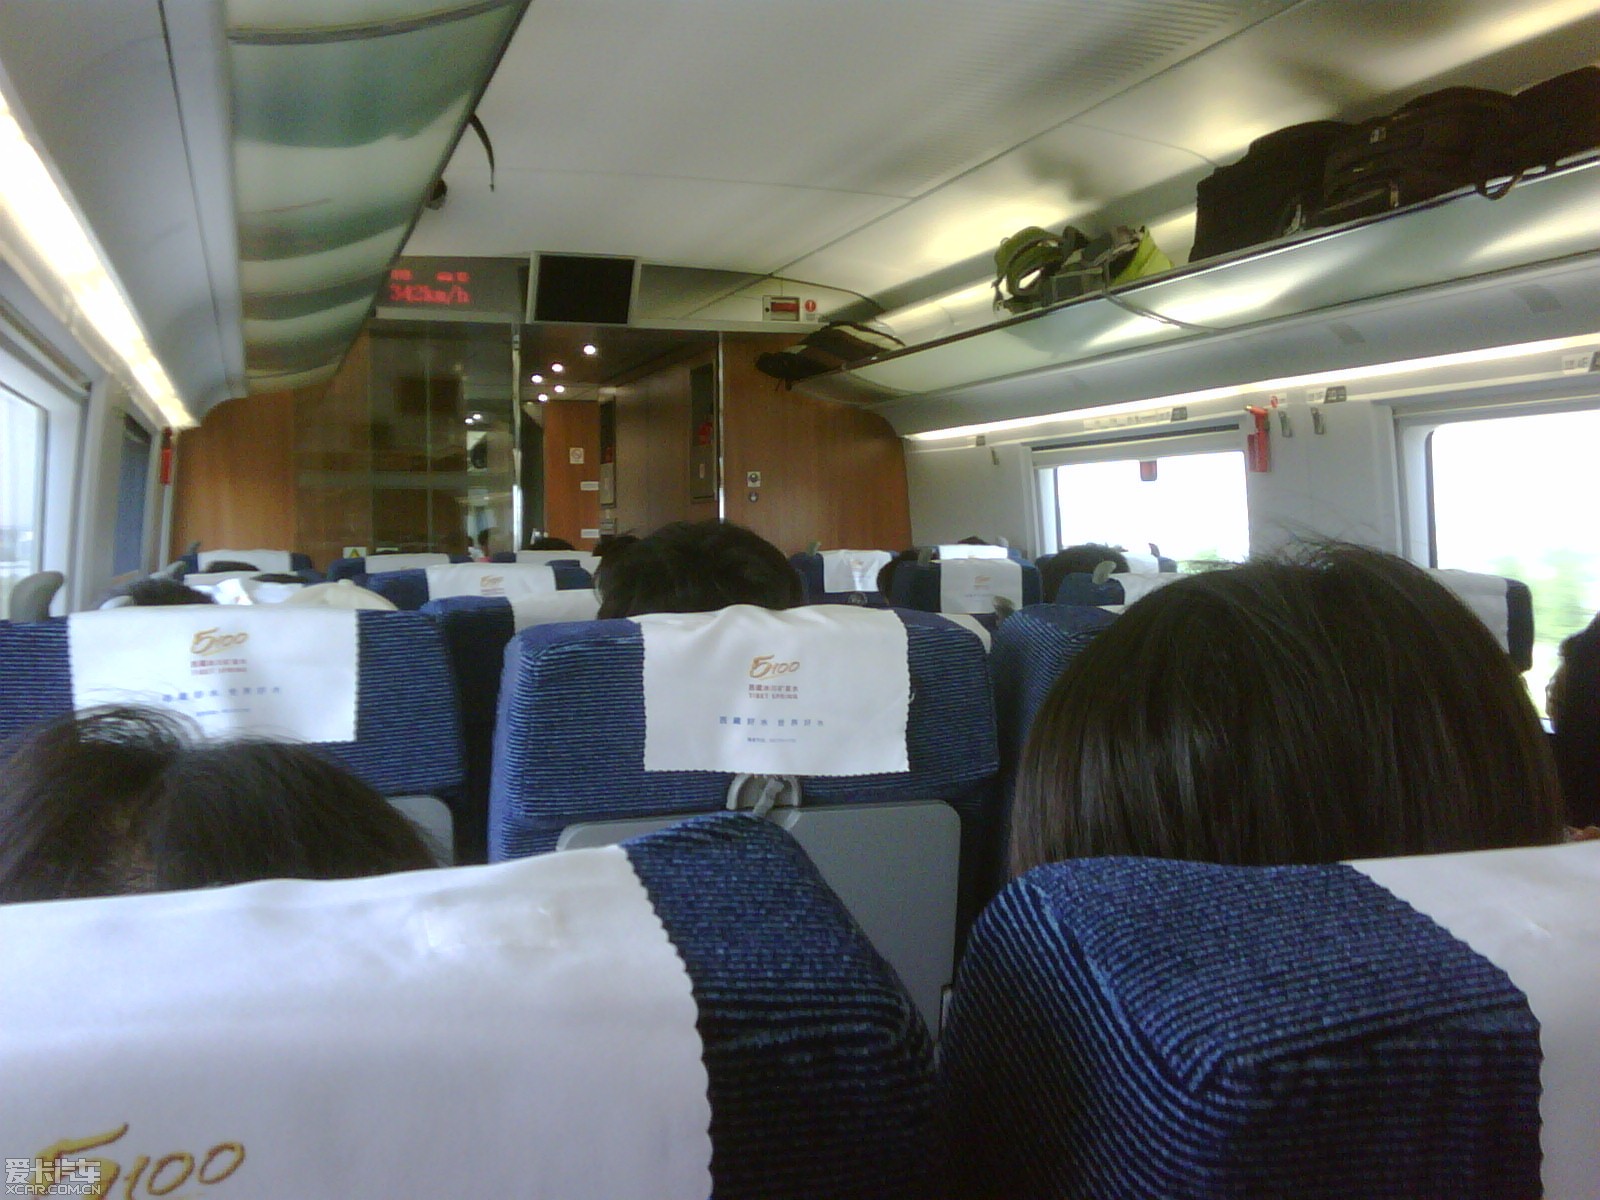 我也来发几张图片 上海到杭州的高铁